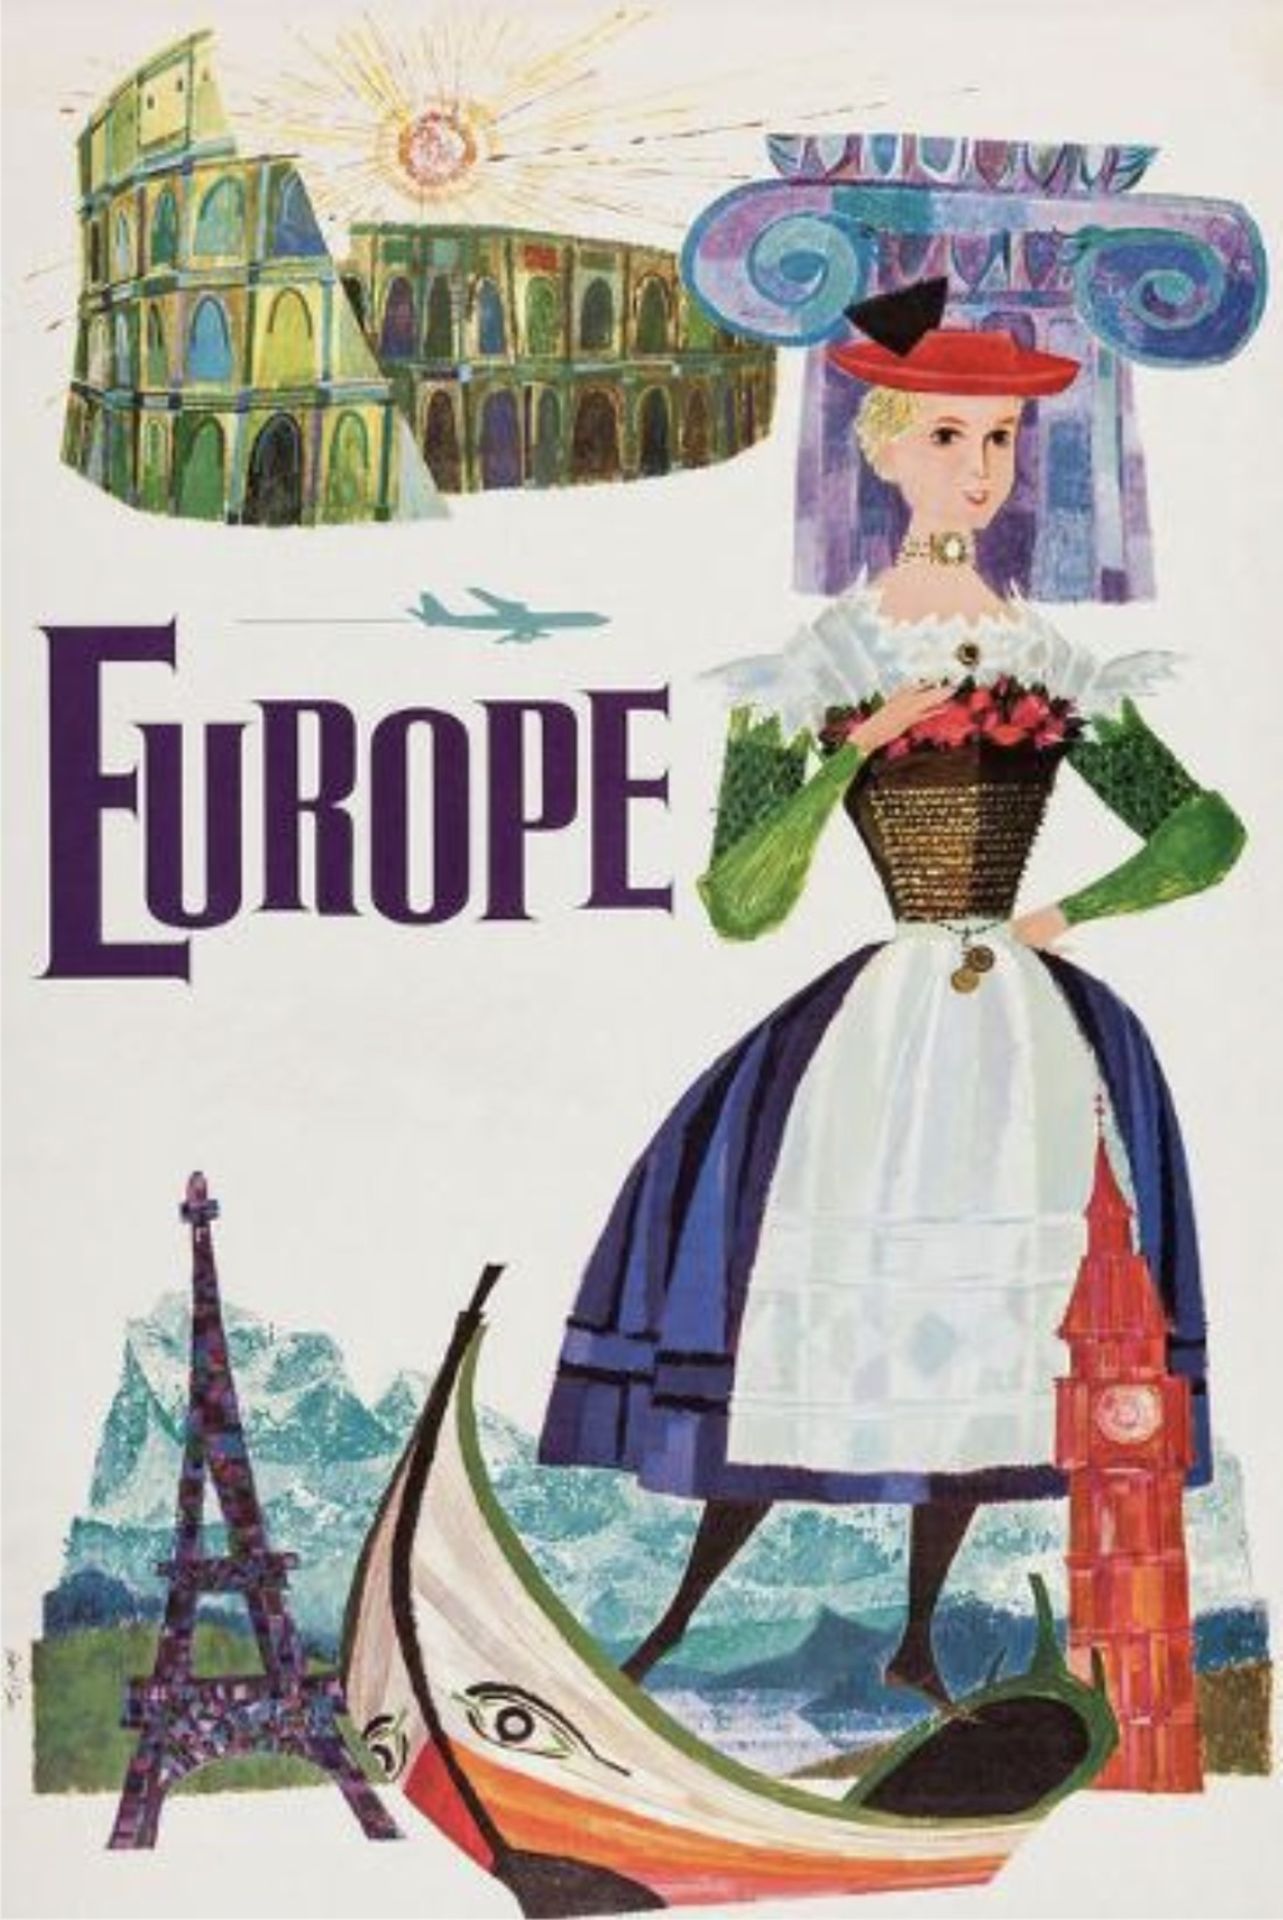 David Klein "Europe" Travel Poster